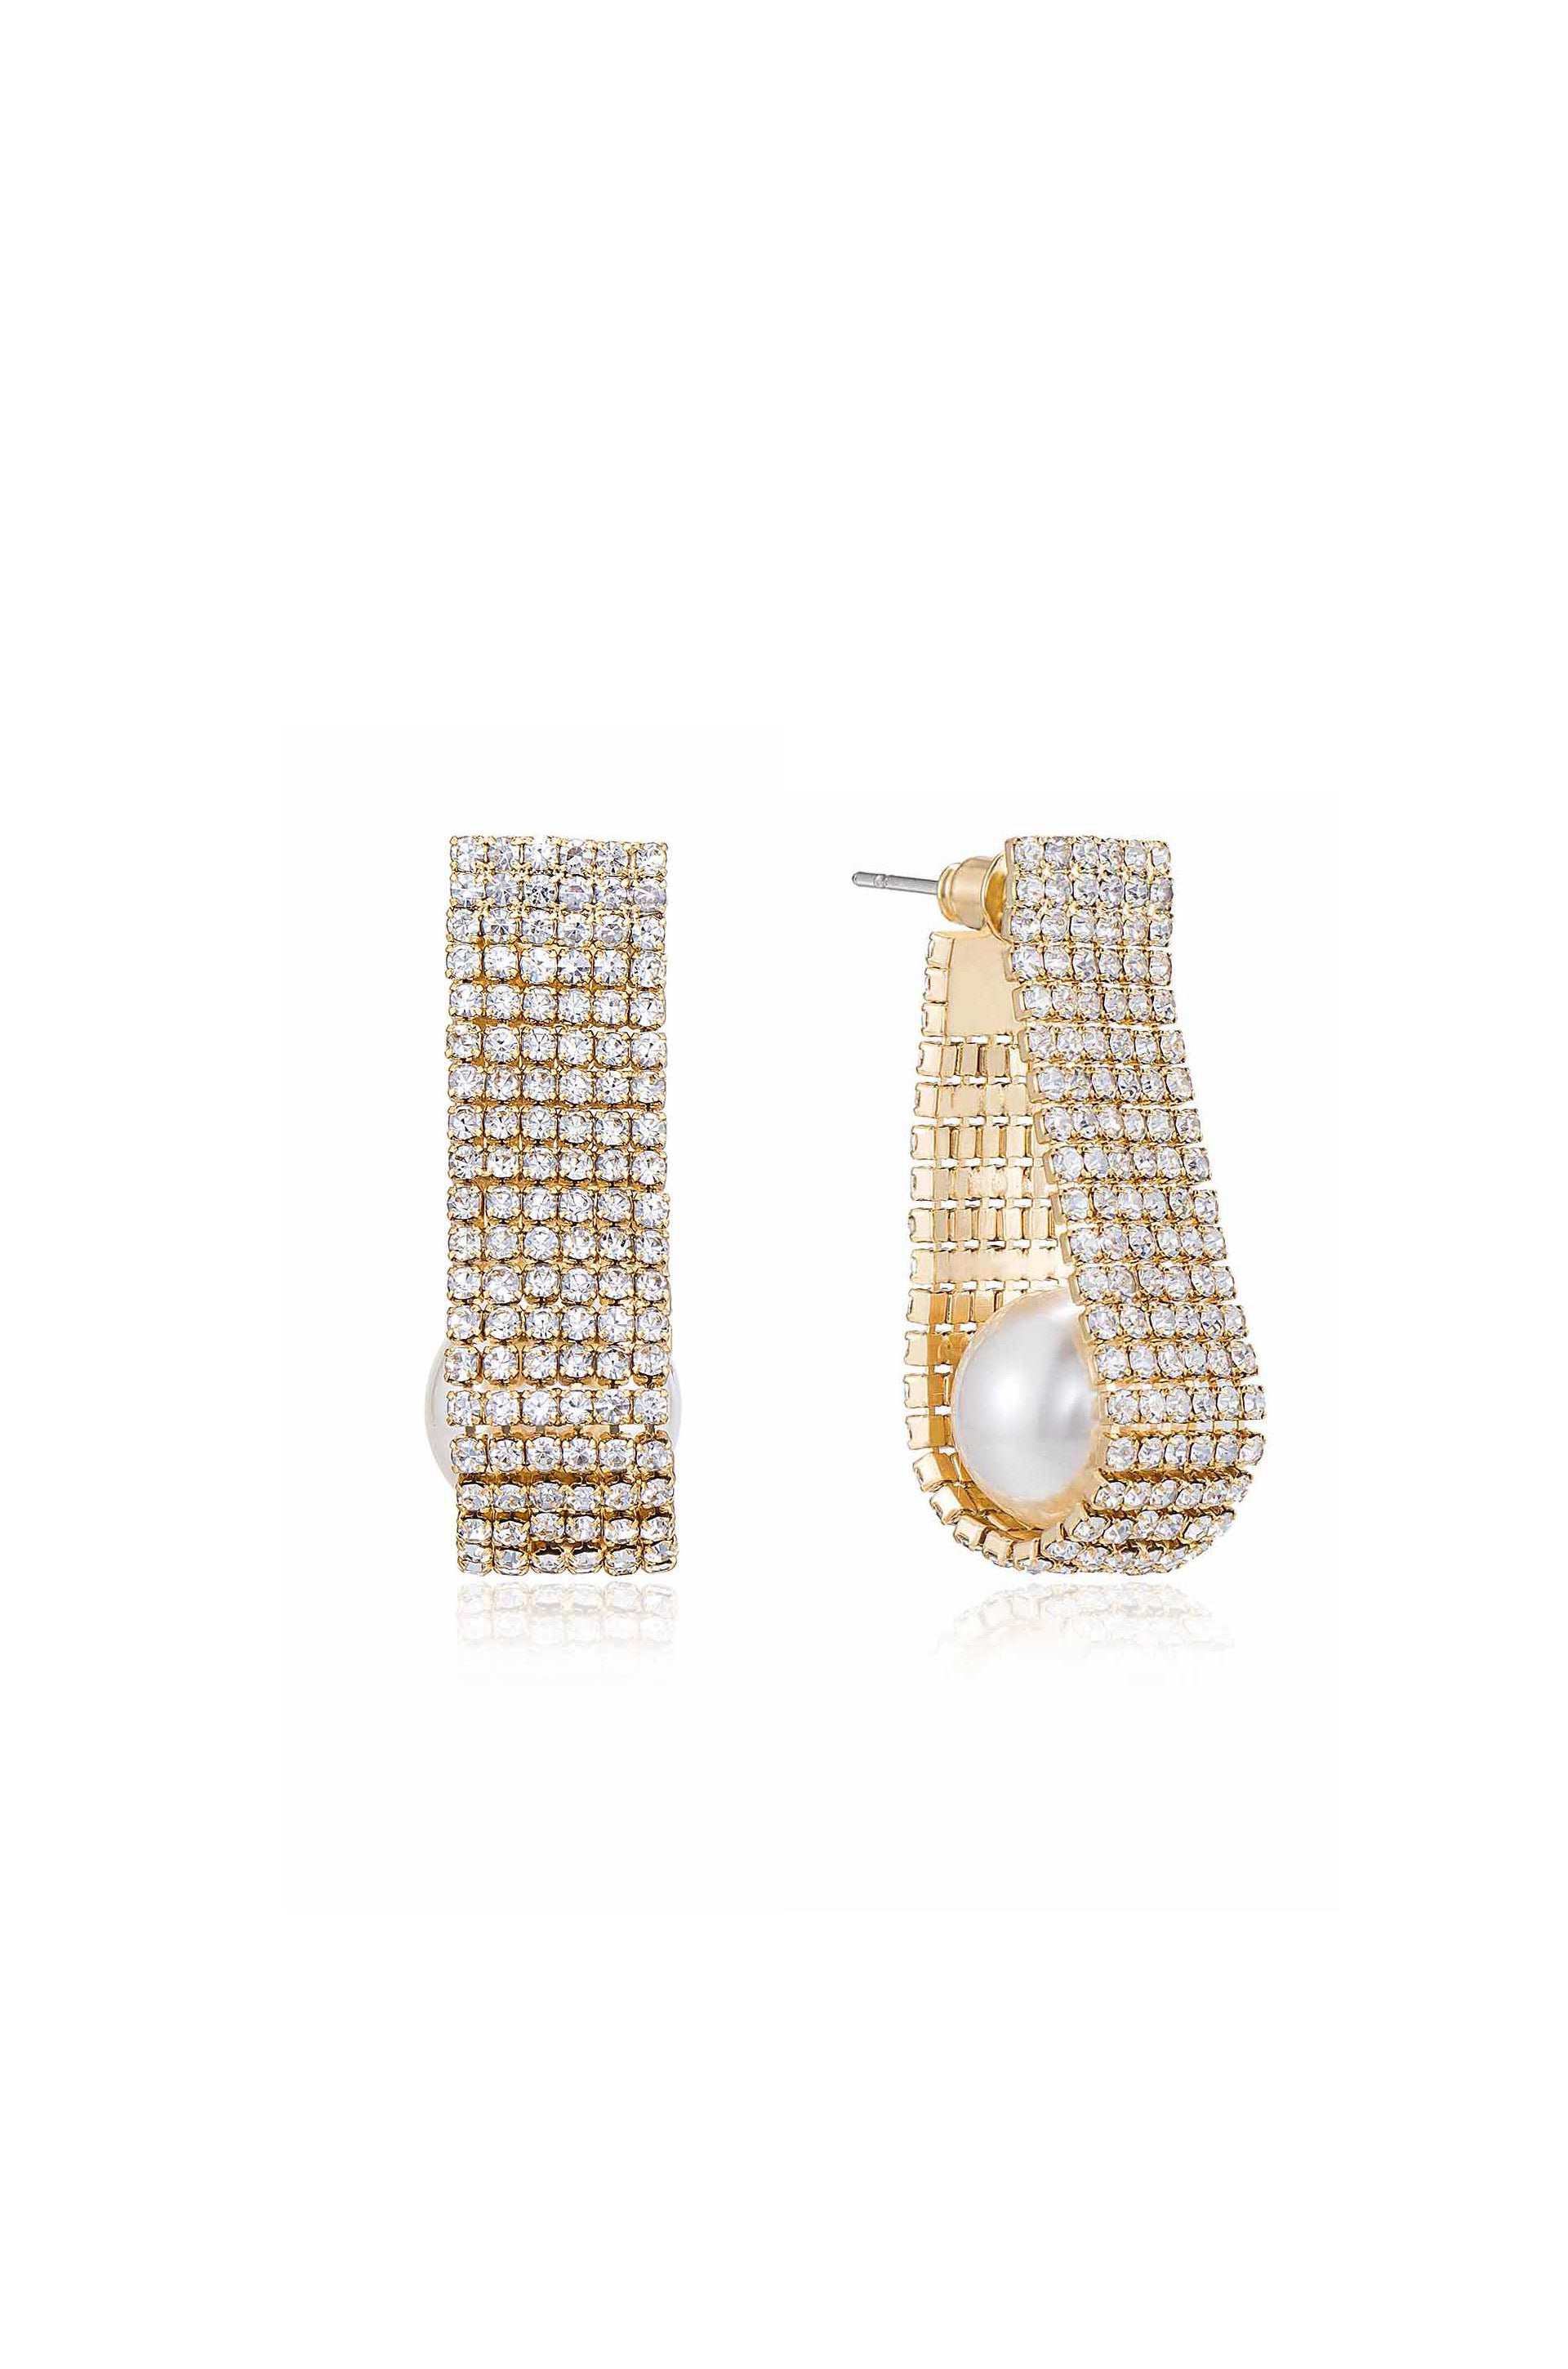 Swaddled Pearl Crystal Teardrop Earrings